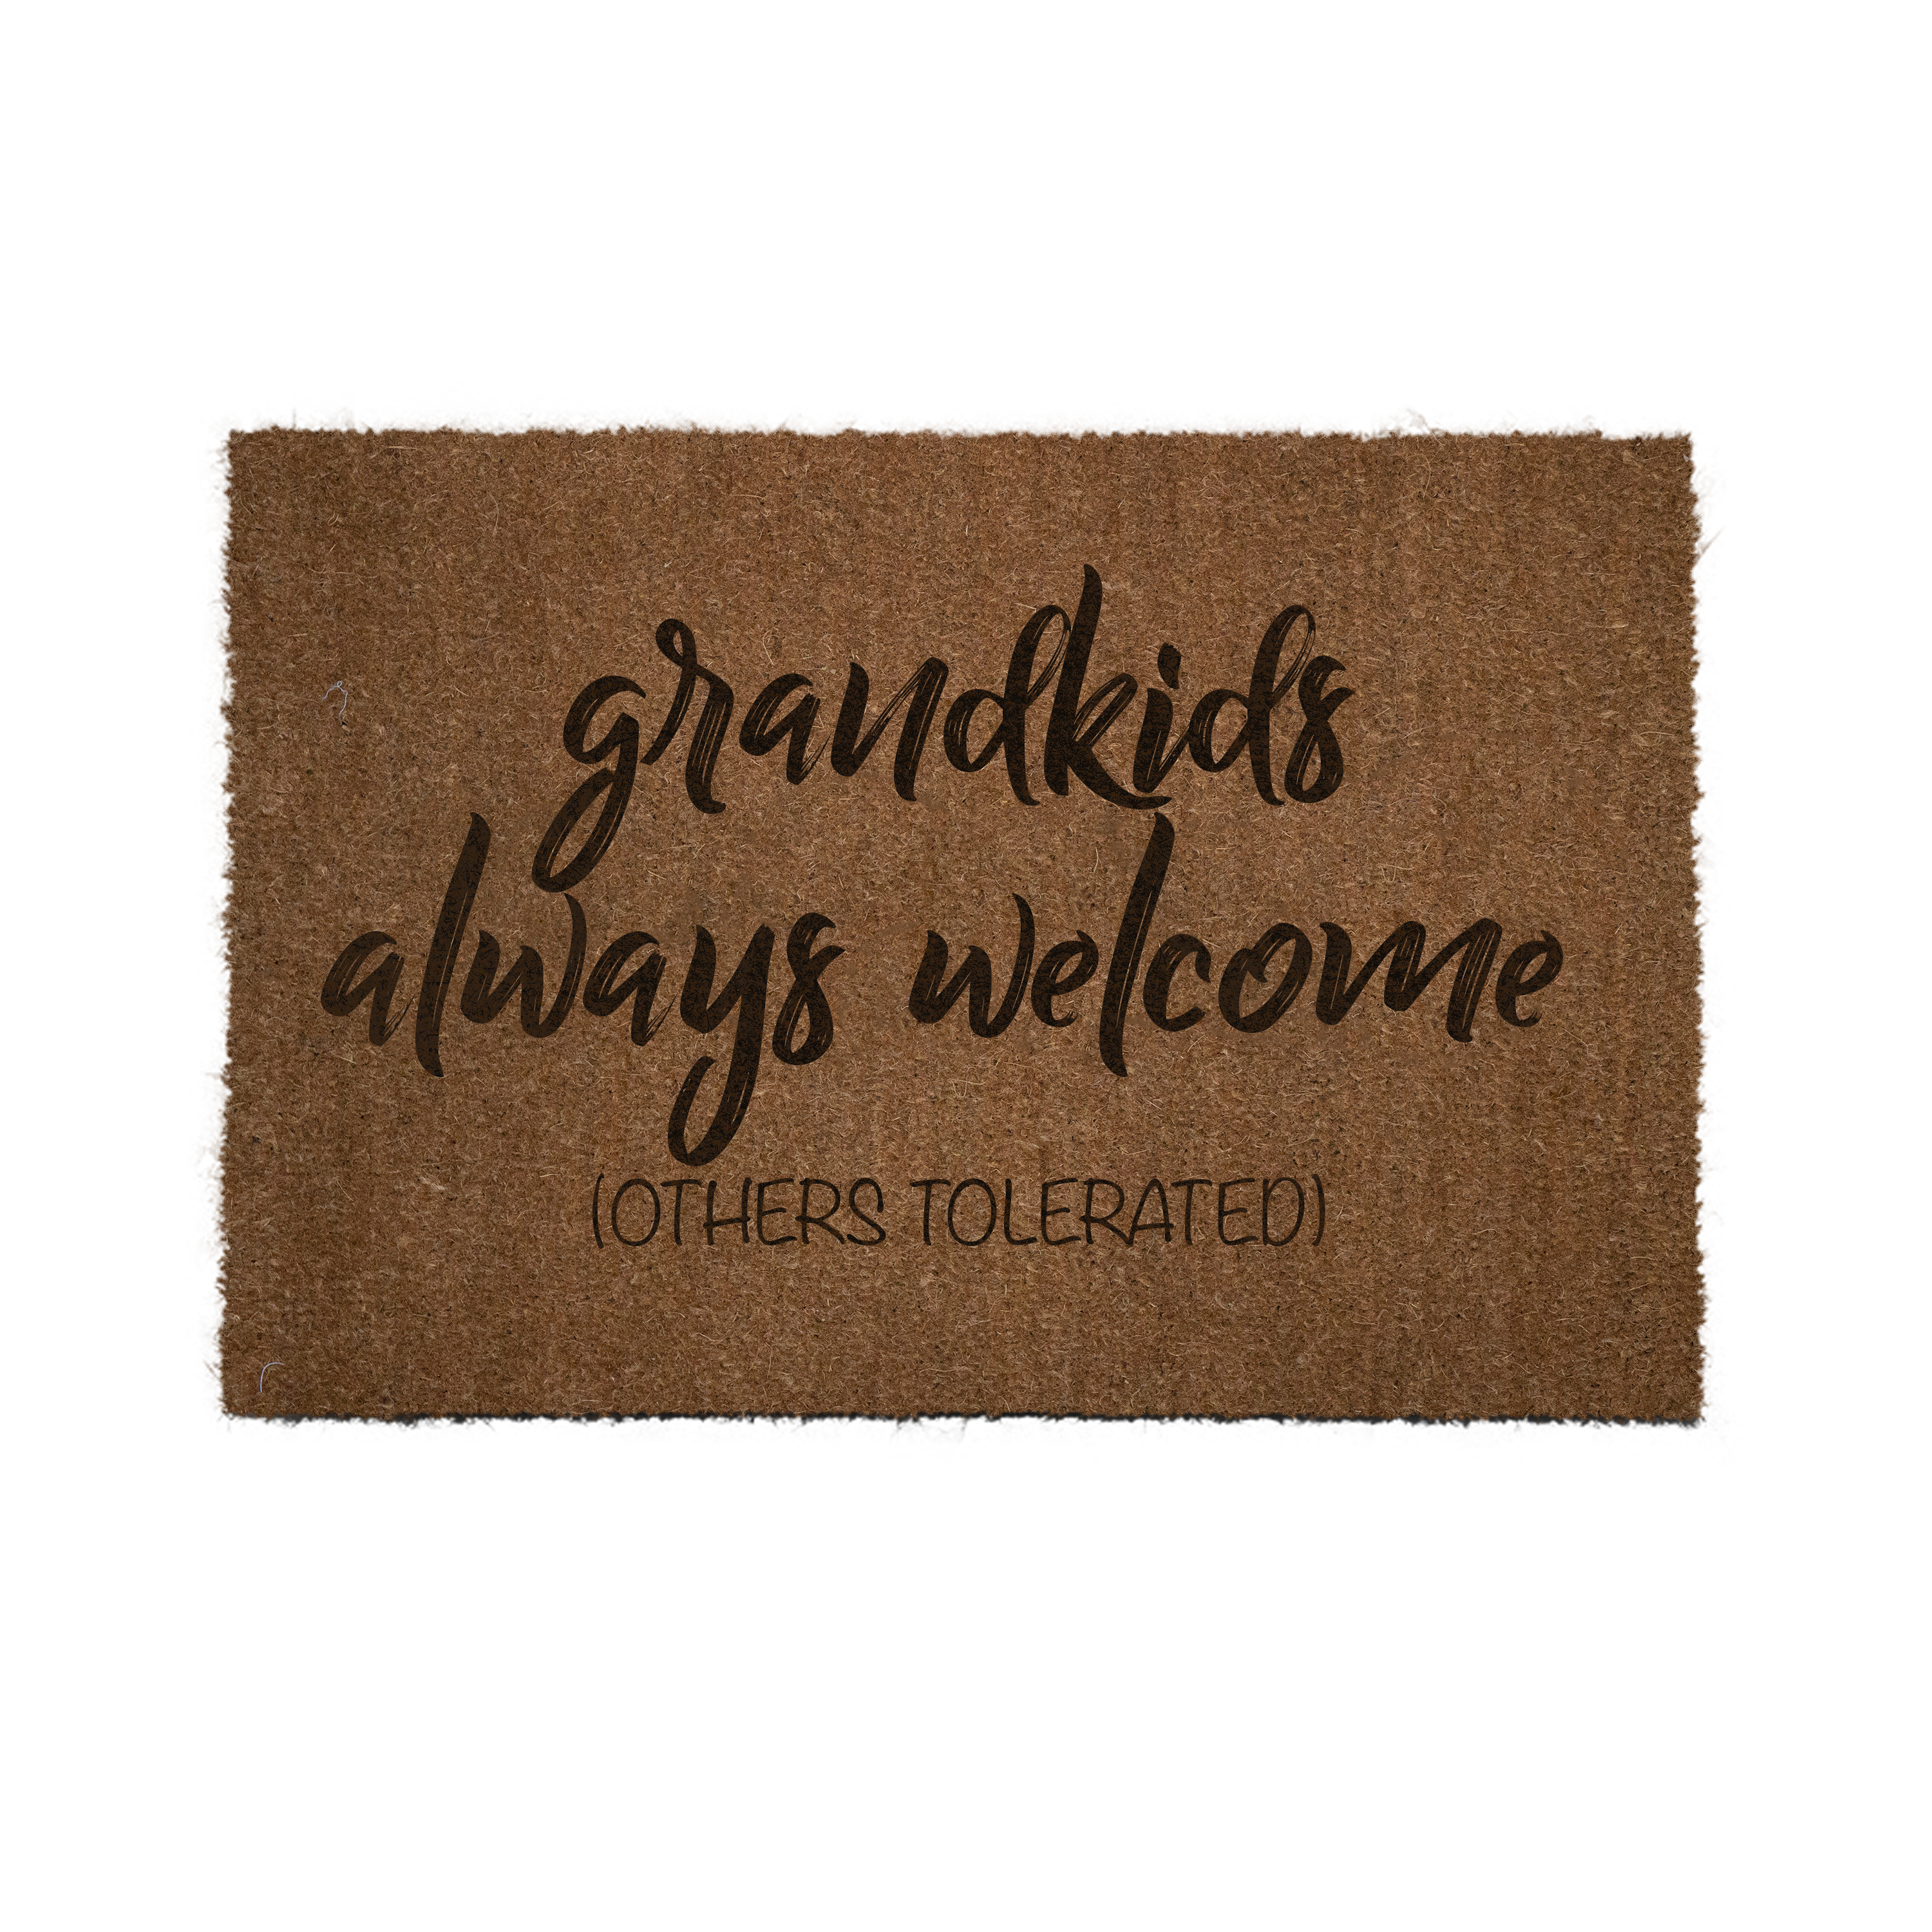 Grandkids always welcome